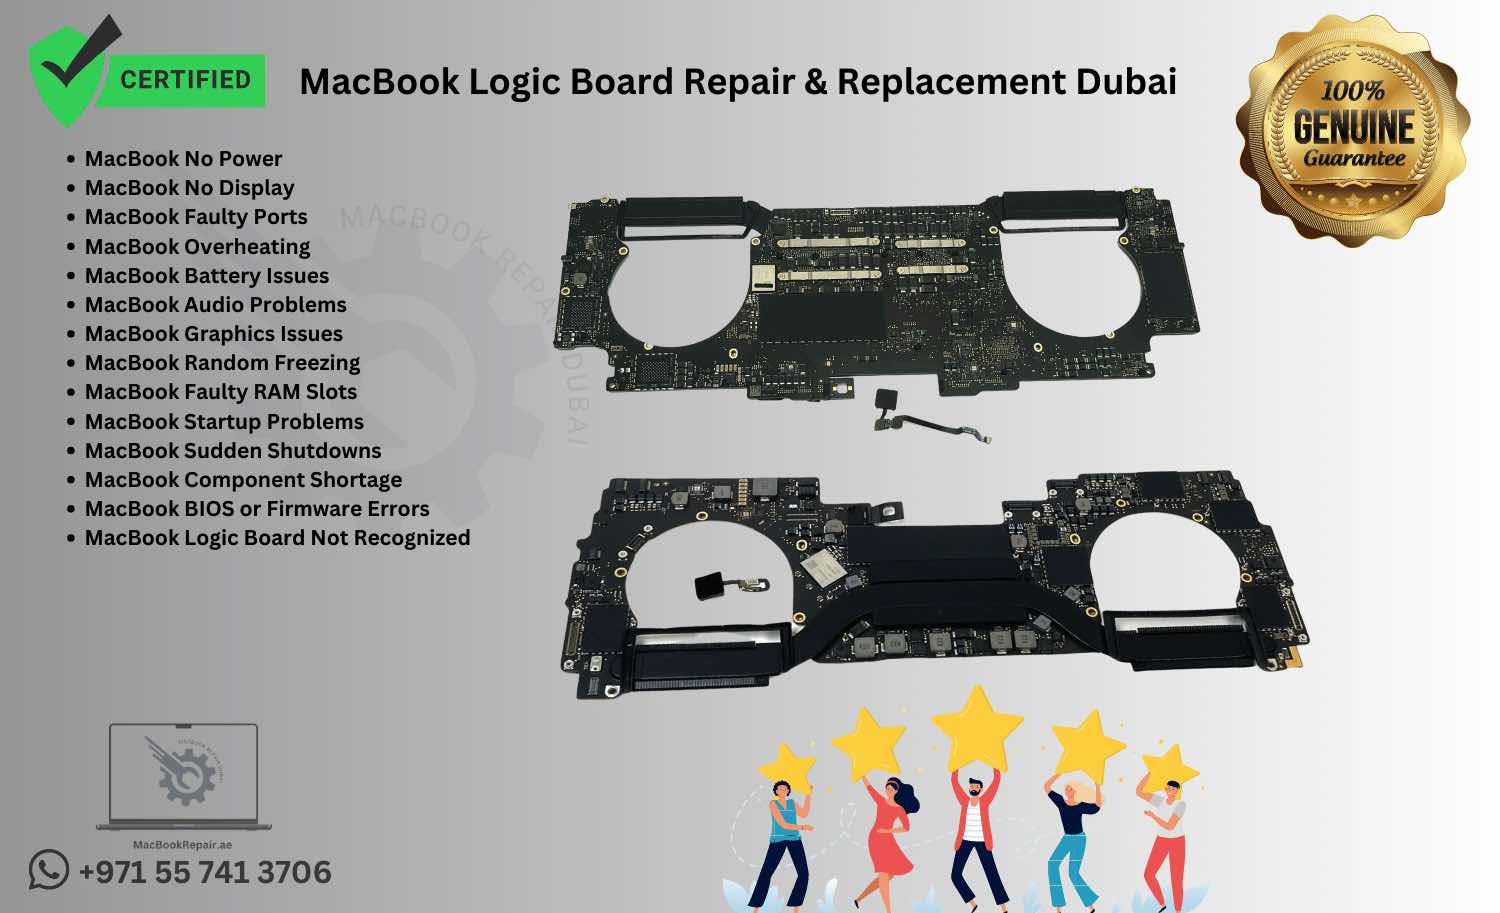 MacBook Logic Board Repair & Replacement Dubai